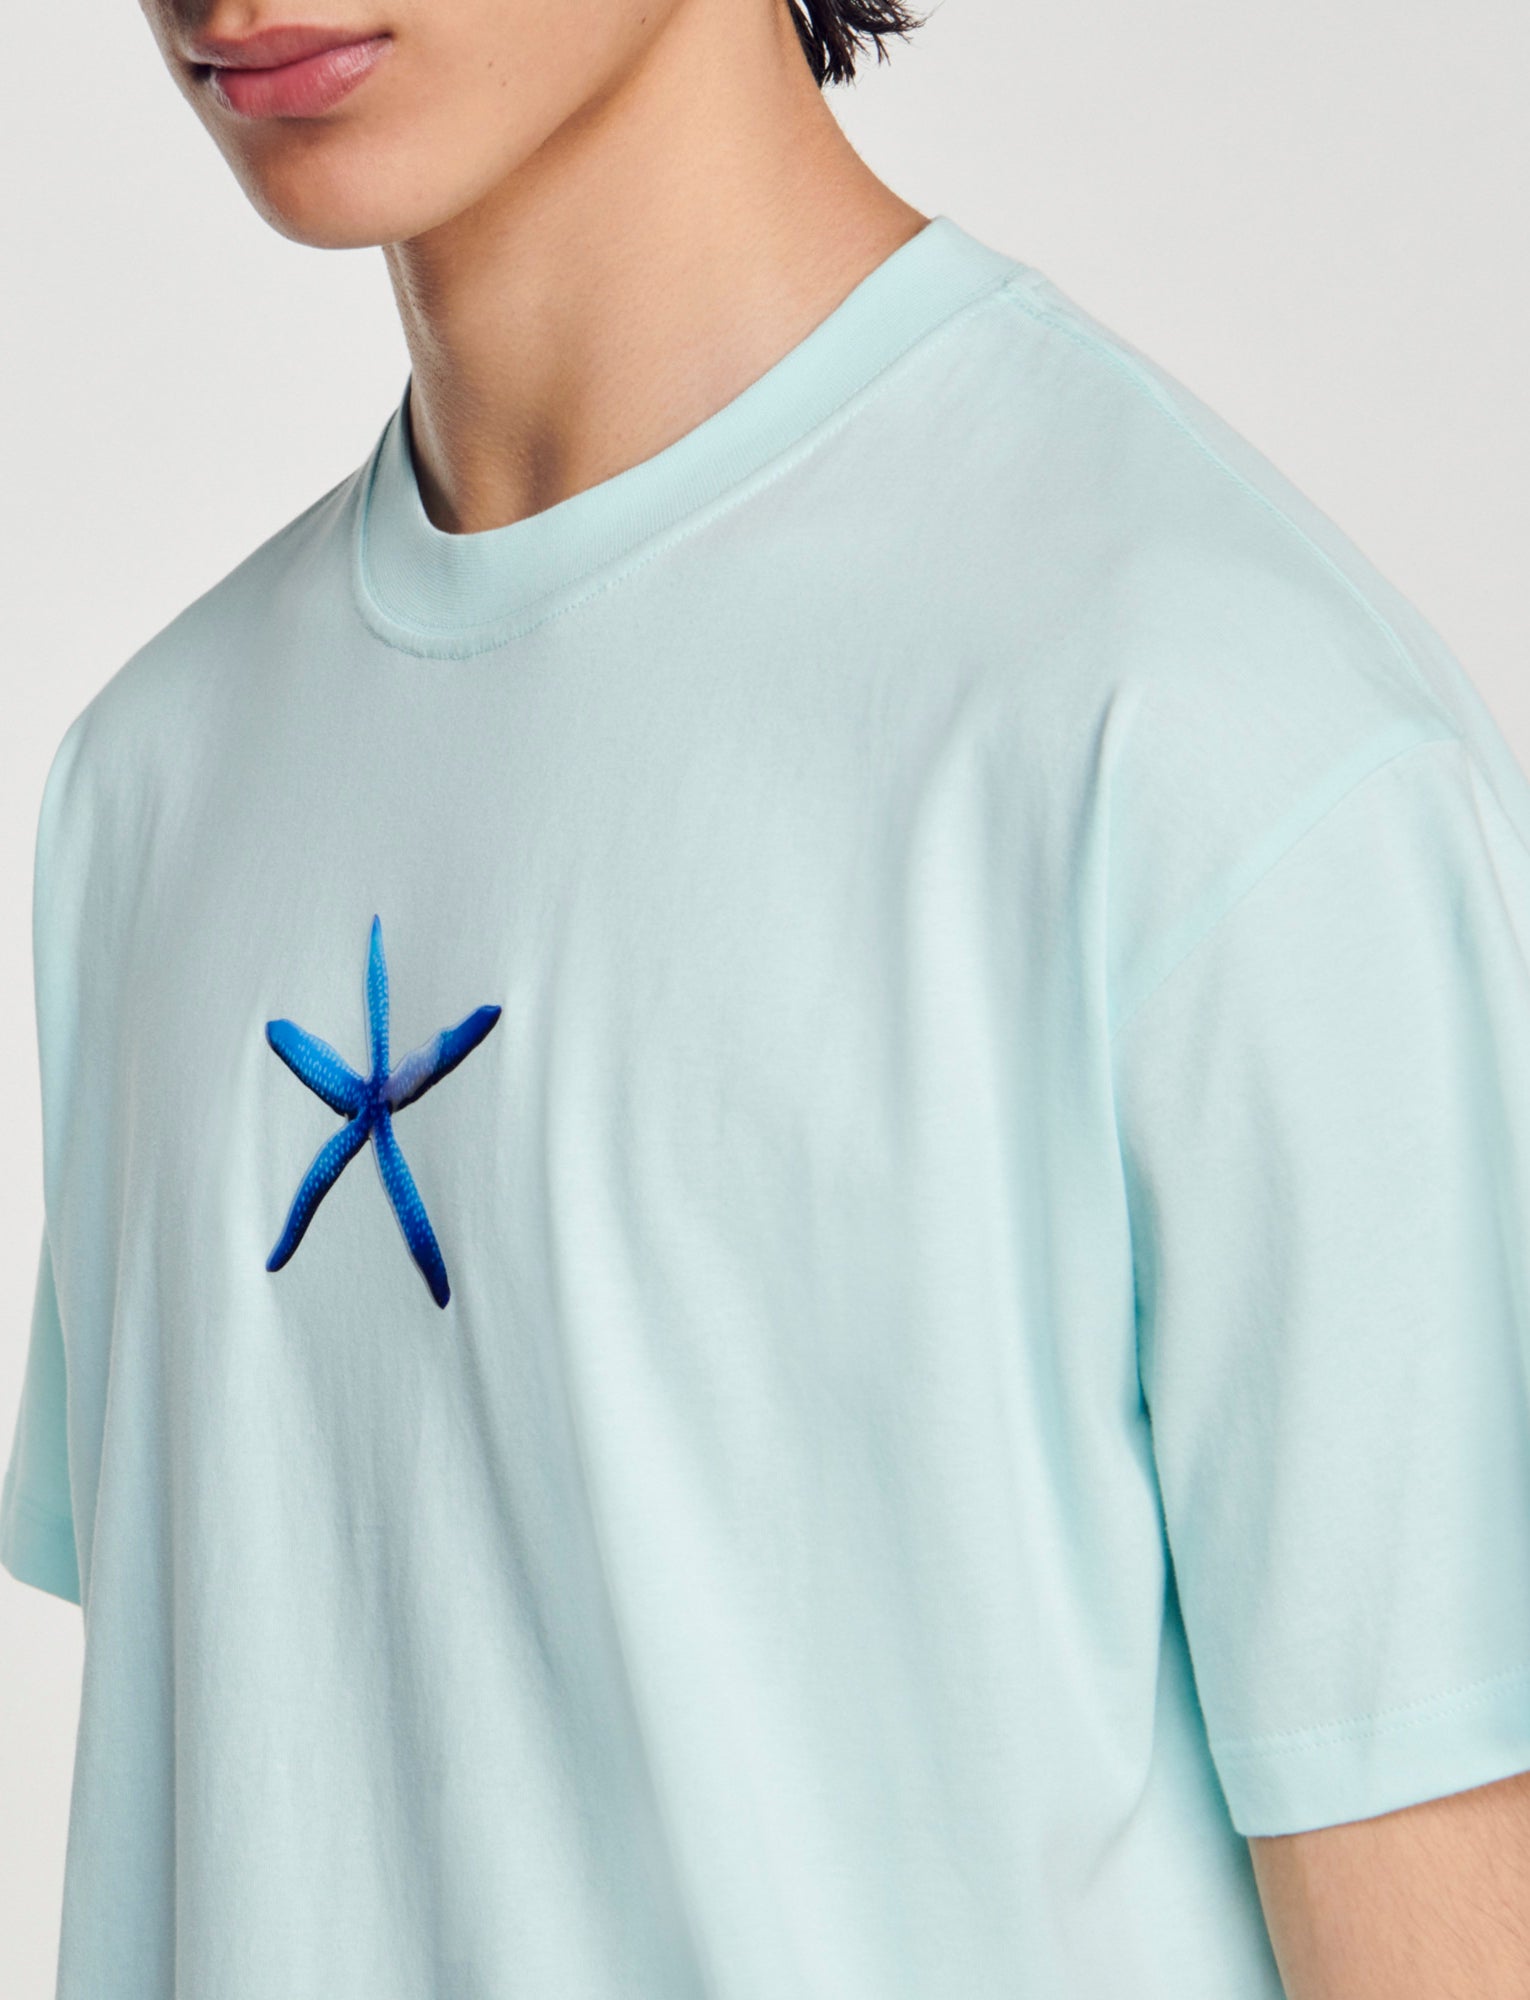 Camiseta con estampado estrella de mar